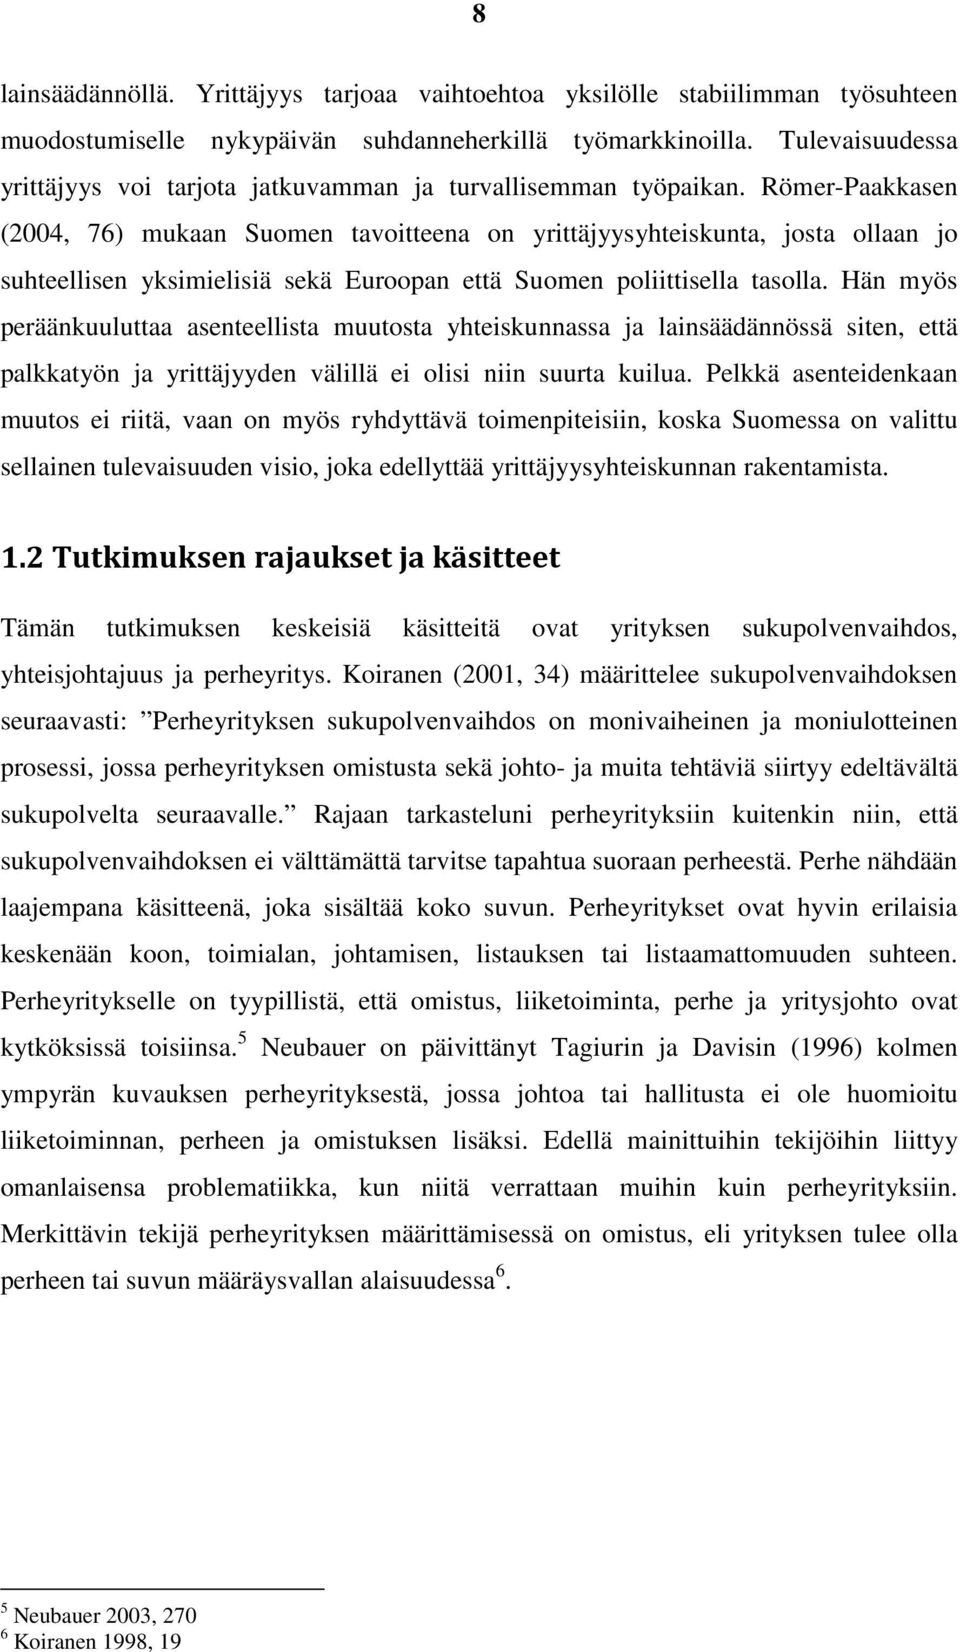 Römer-Paakkasen (2004, 76) mukaan Suomen tavoitteena on yrittäjyysyhteiskunta, josta ollaan jo suhteellisen yksimielisiä sekä Euroopan että Suomen poliittisella tasolla.